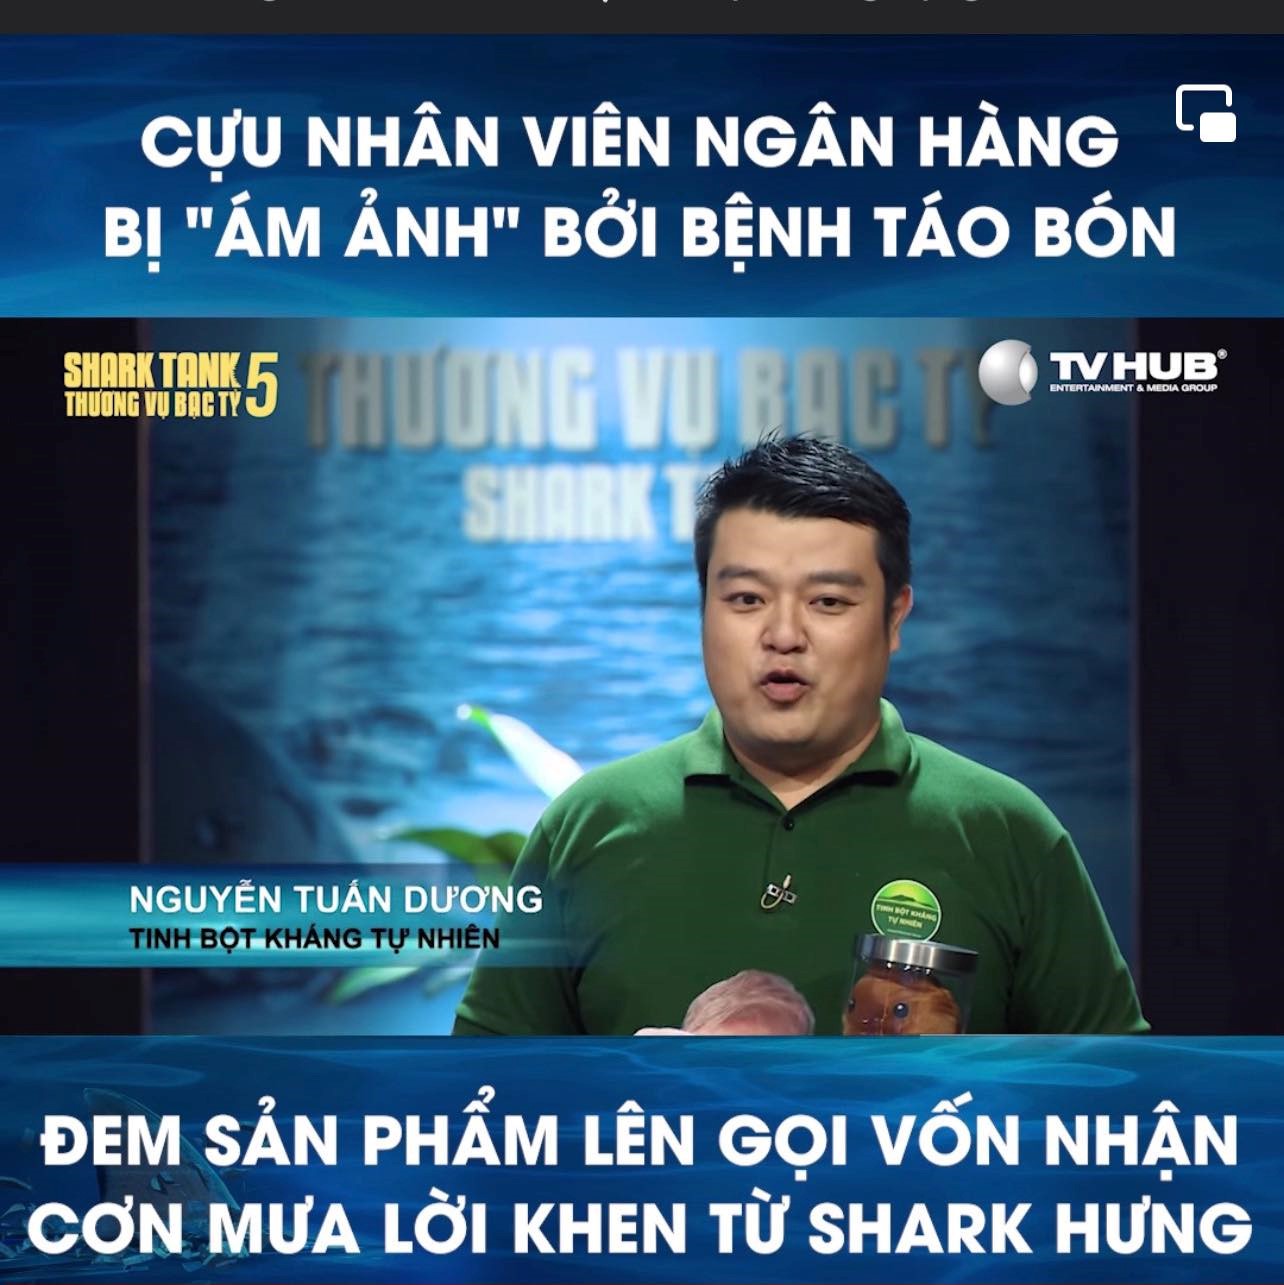 Cần biết - Gặp gỡ CEO Dương Đậu Xanh: “Mục tiêu hướng đến của tôi là mọi người dân Việt Nam không còn mắc các vấn đề về đường ruột”